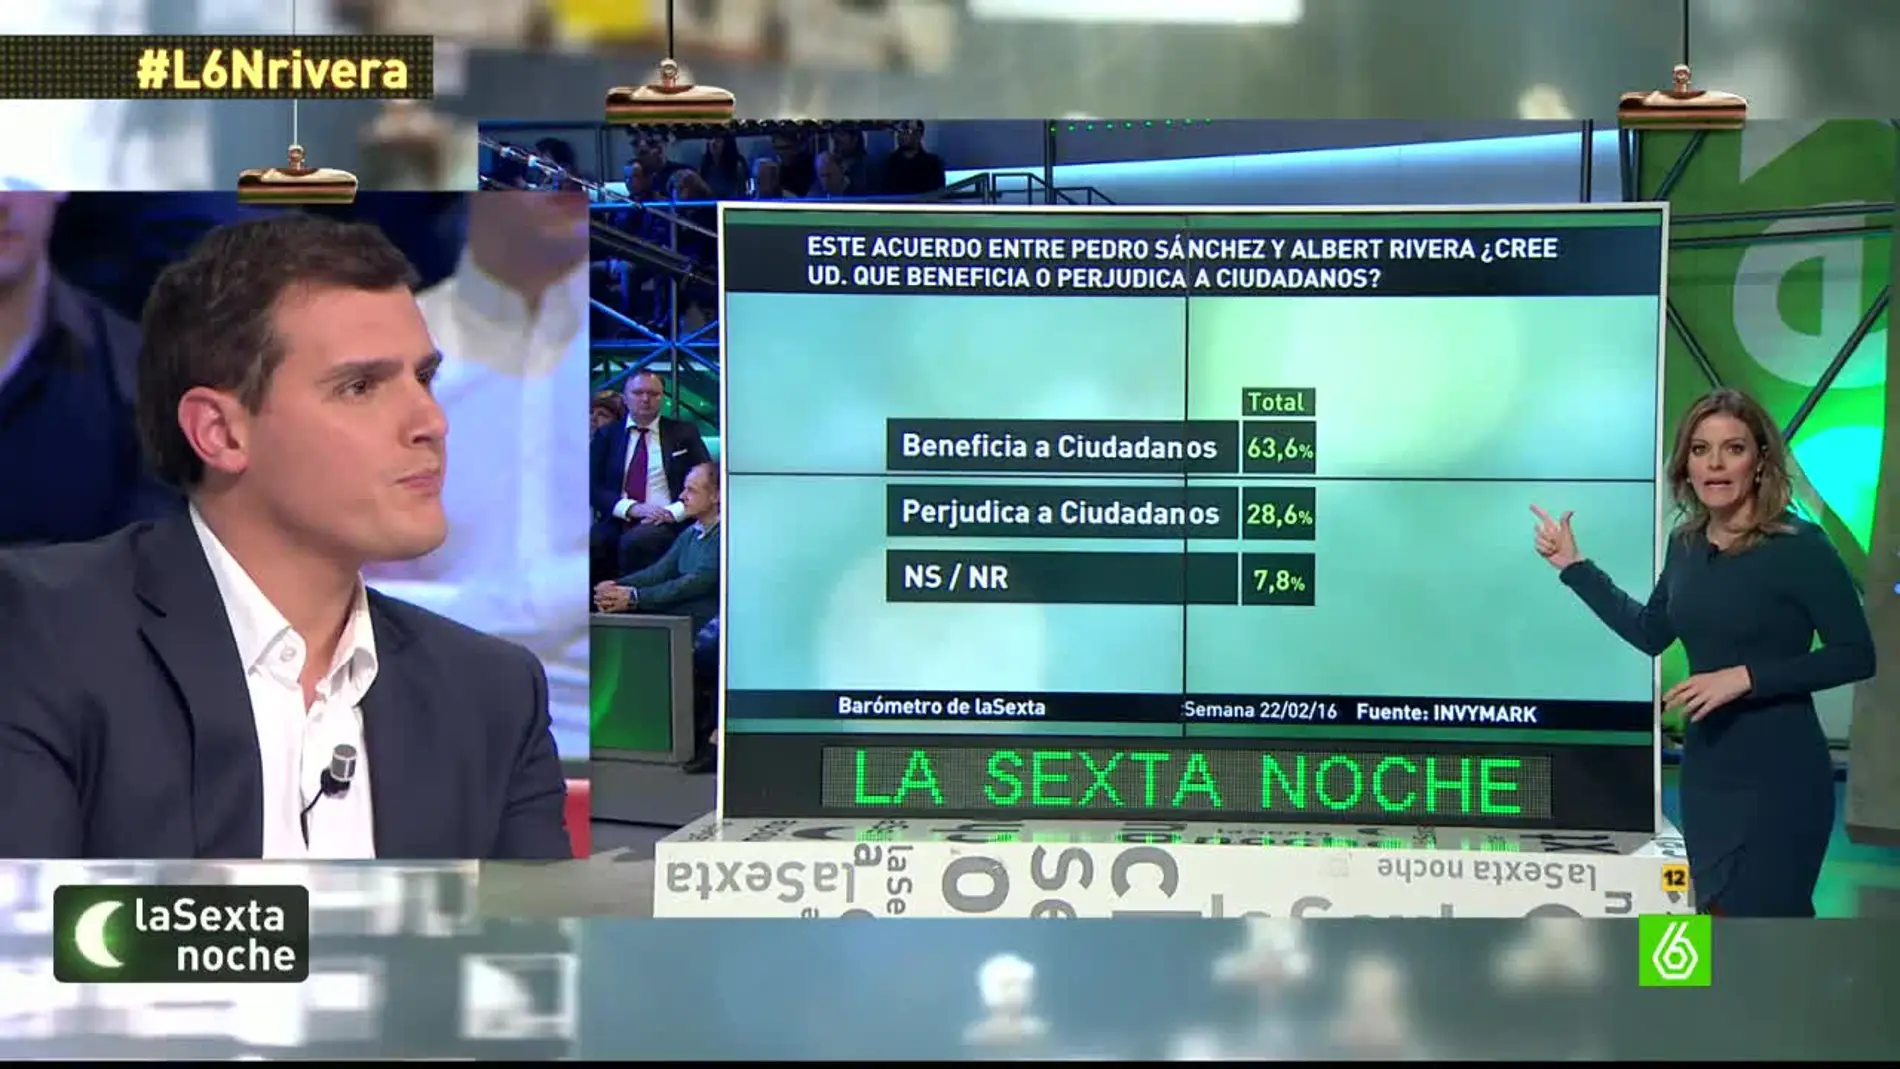 Barómetro de laSexta sobre el pacto PSOE y Ciudadanos